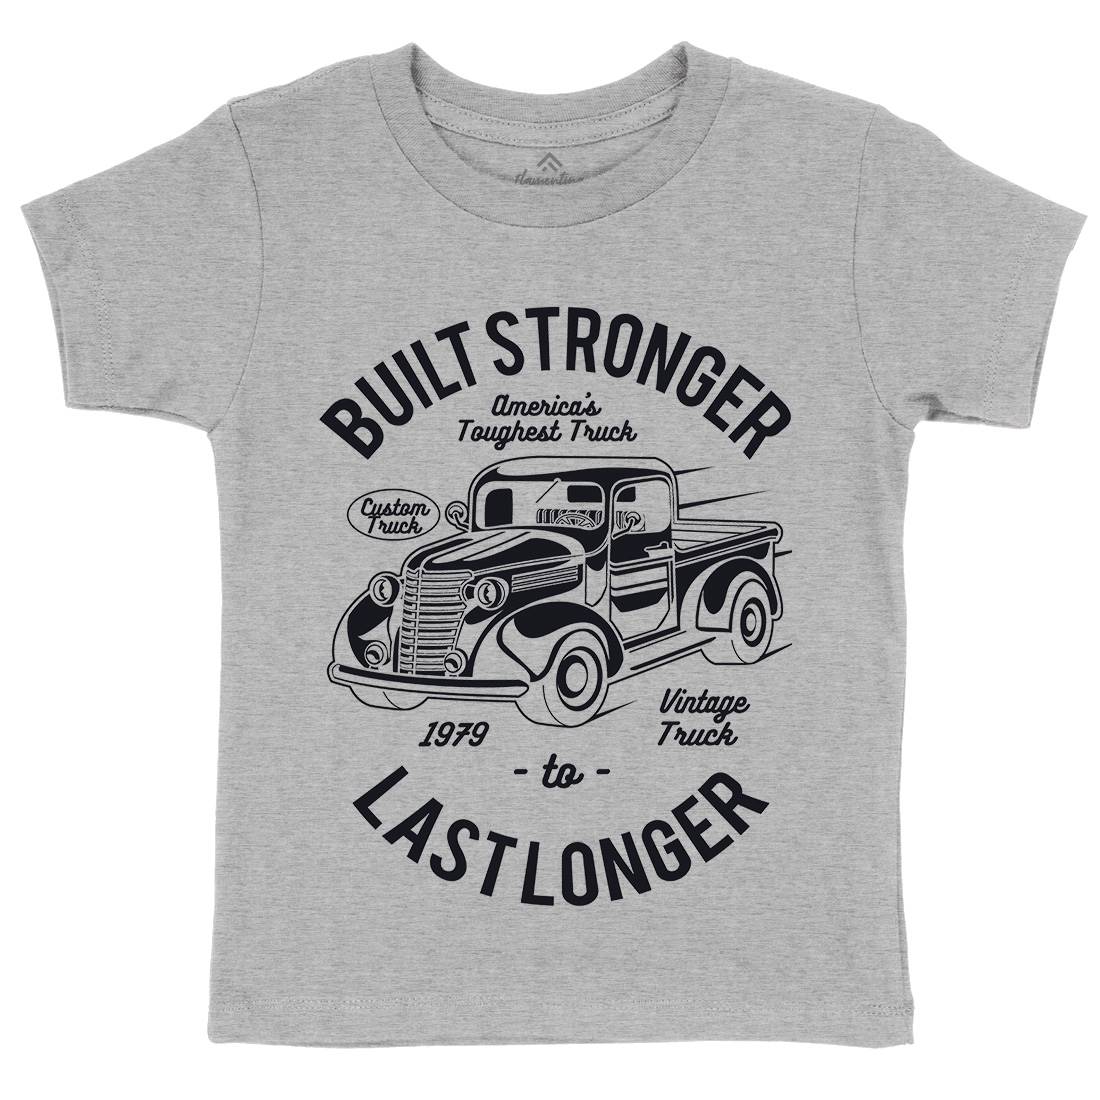 Built Stronger Kids Organic Crew Neck T-Shirt Cars A023